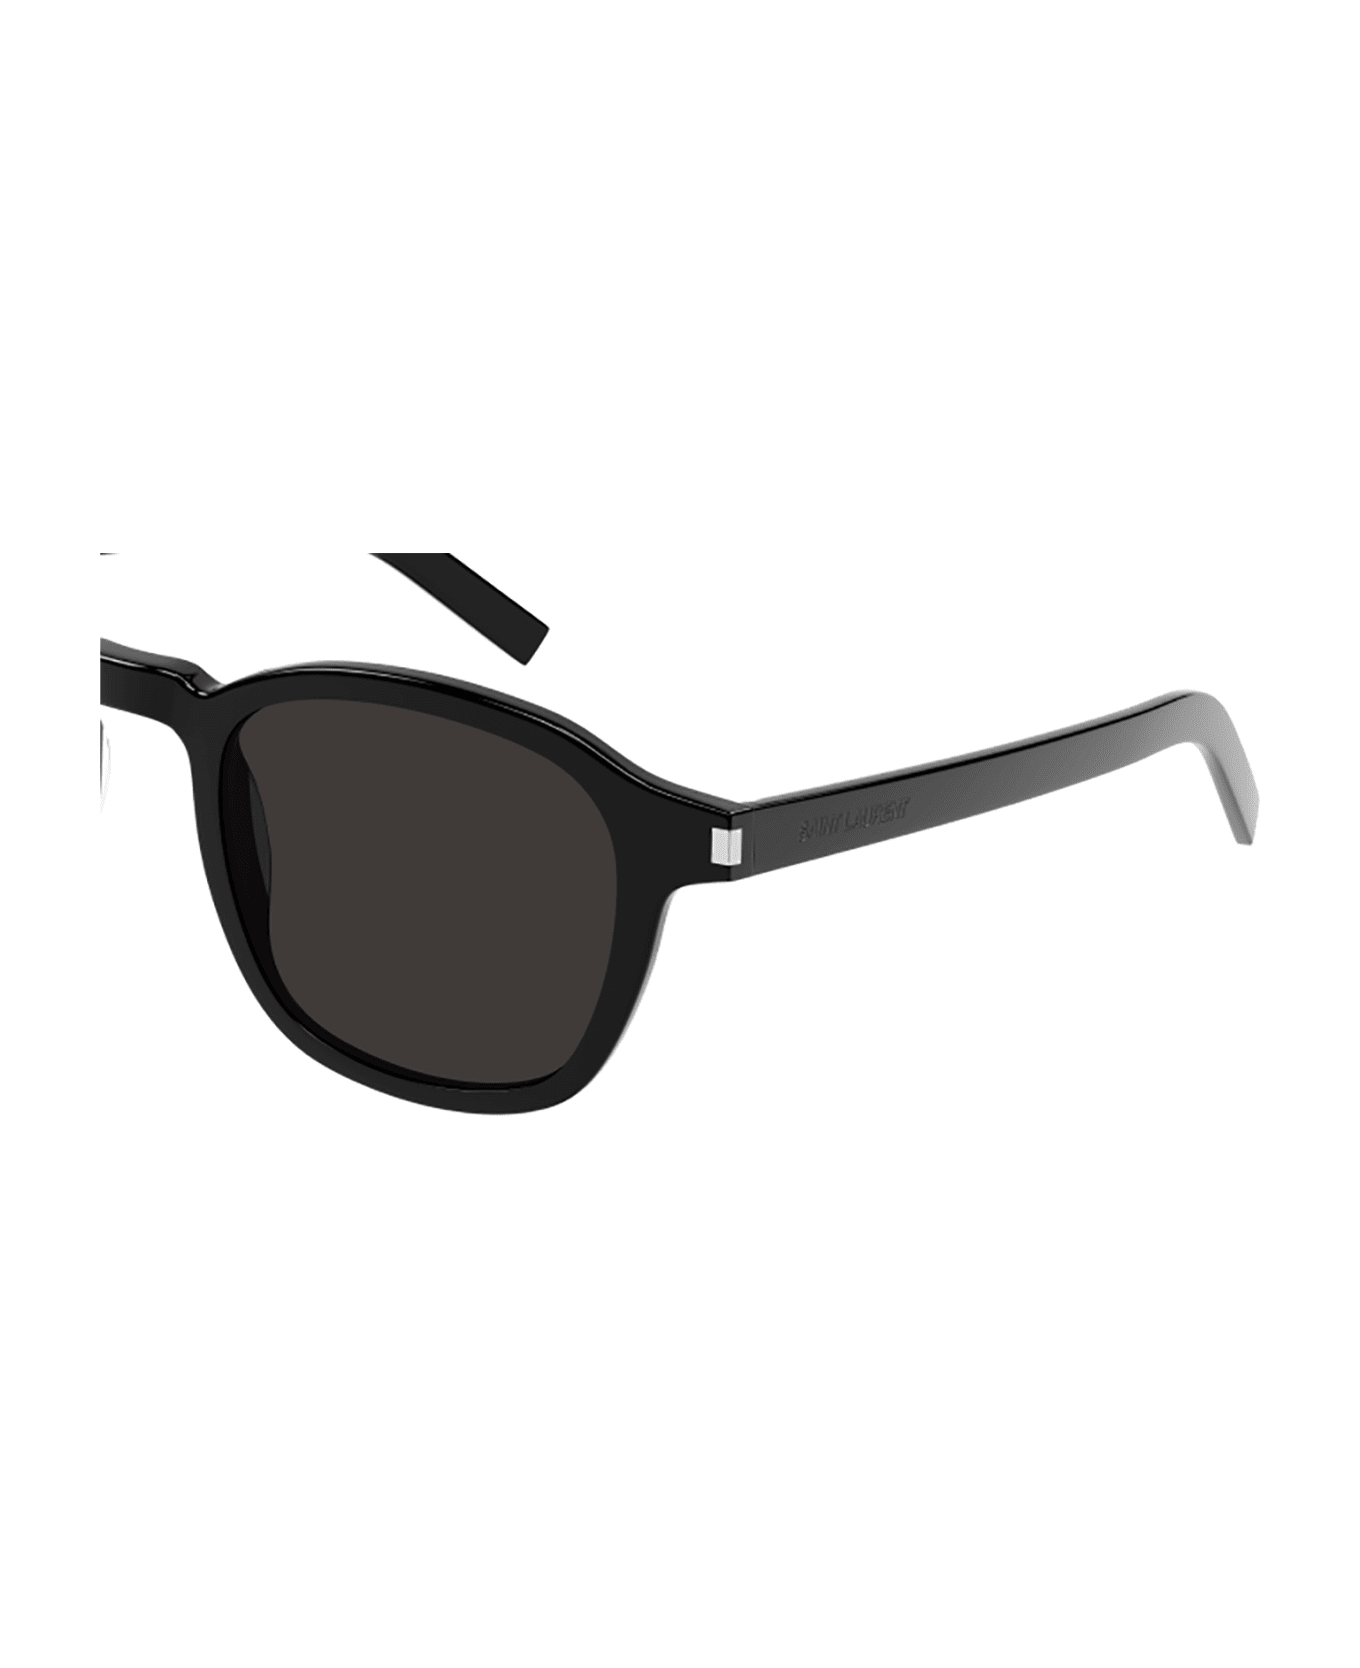 Saint Laurent Eyewear SL 549 SLIM Sunglasses - Black Black Black